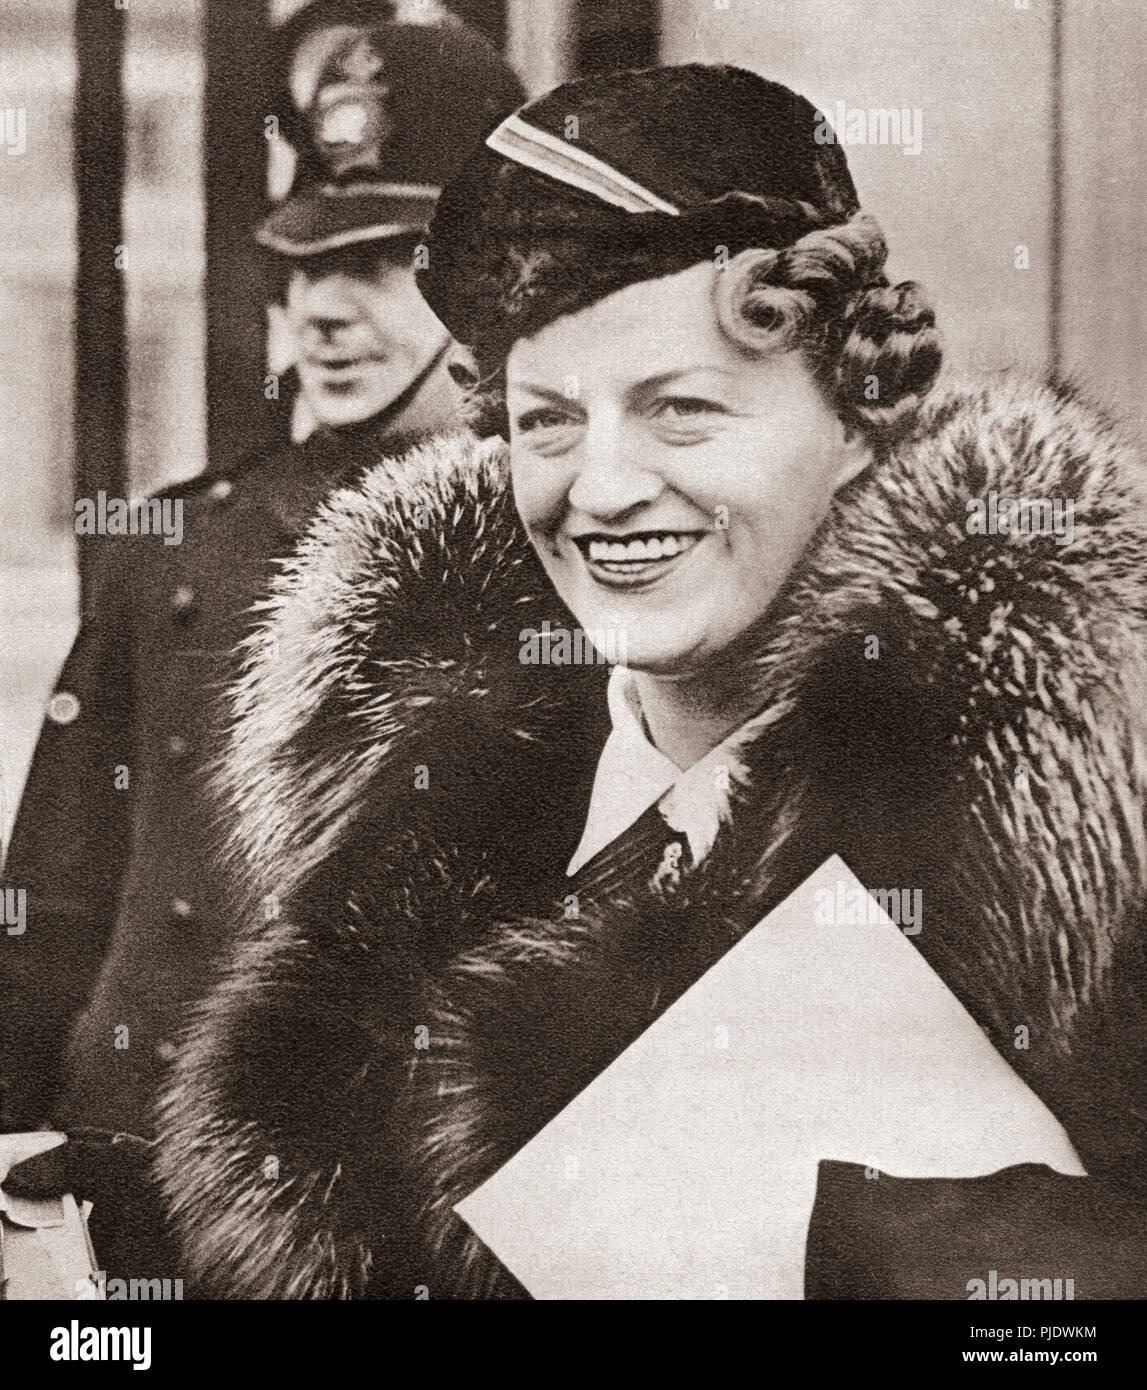 Dame Gracie Fields, nato grazia Stansfield, 1898 - 1979. Inglese attrice, cantante, comico e star di entrambi i cinema e music hall. Da questi straordinari anni, pubblicato in 1938. Foto Stock